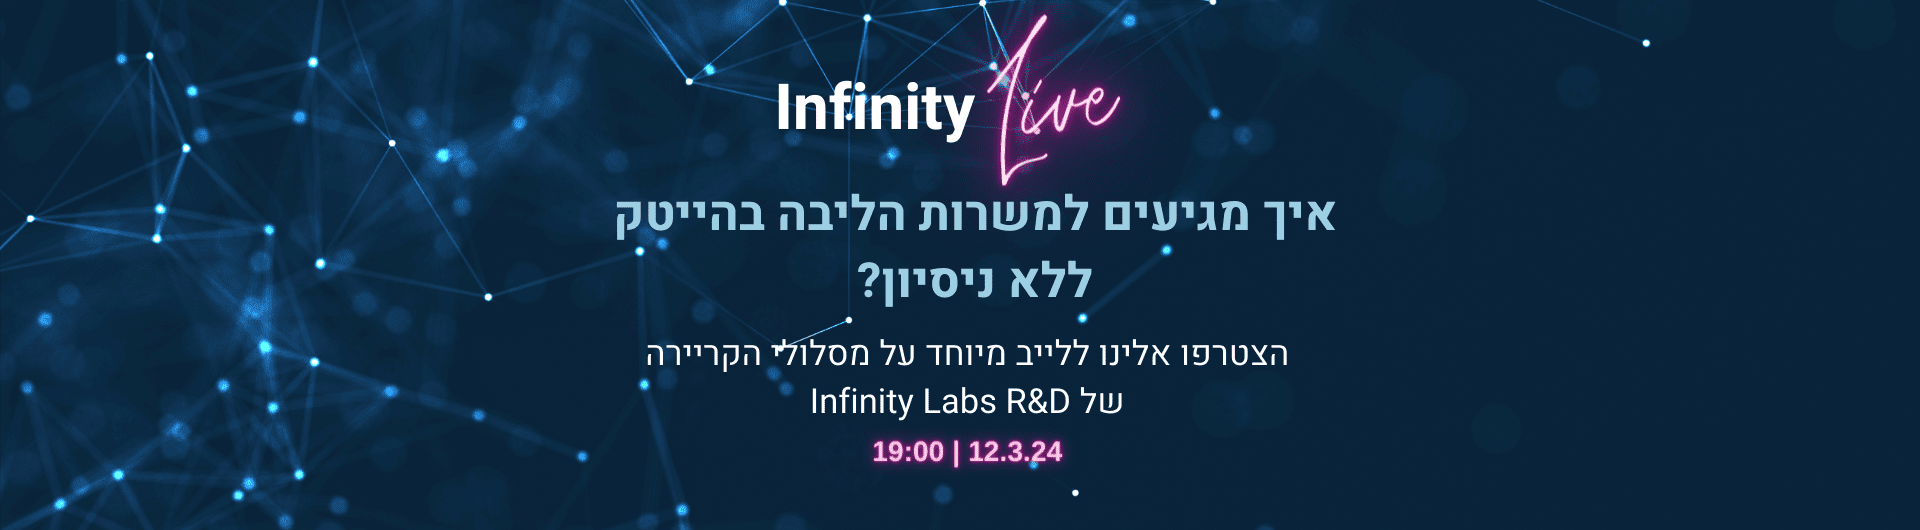 infinitylabs Live